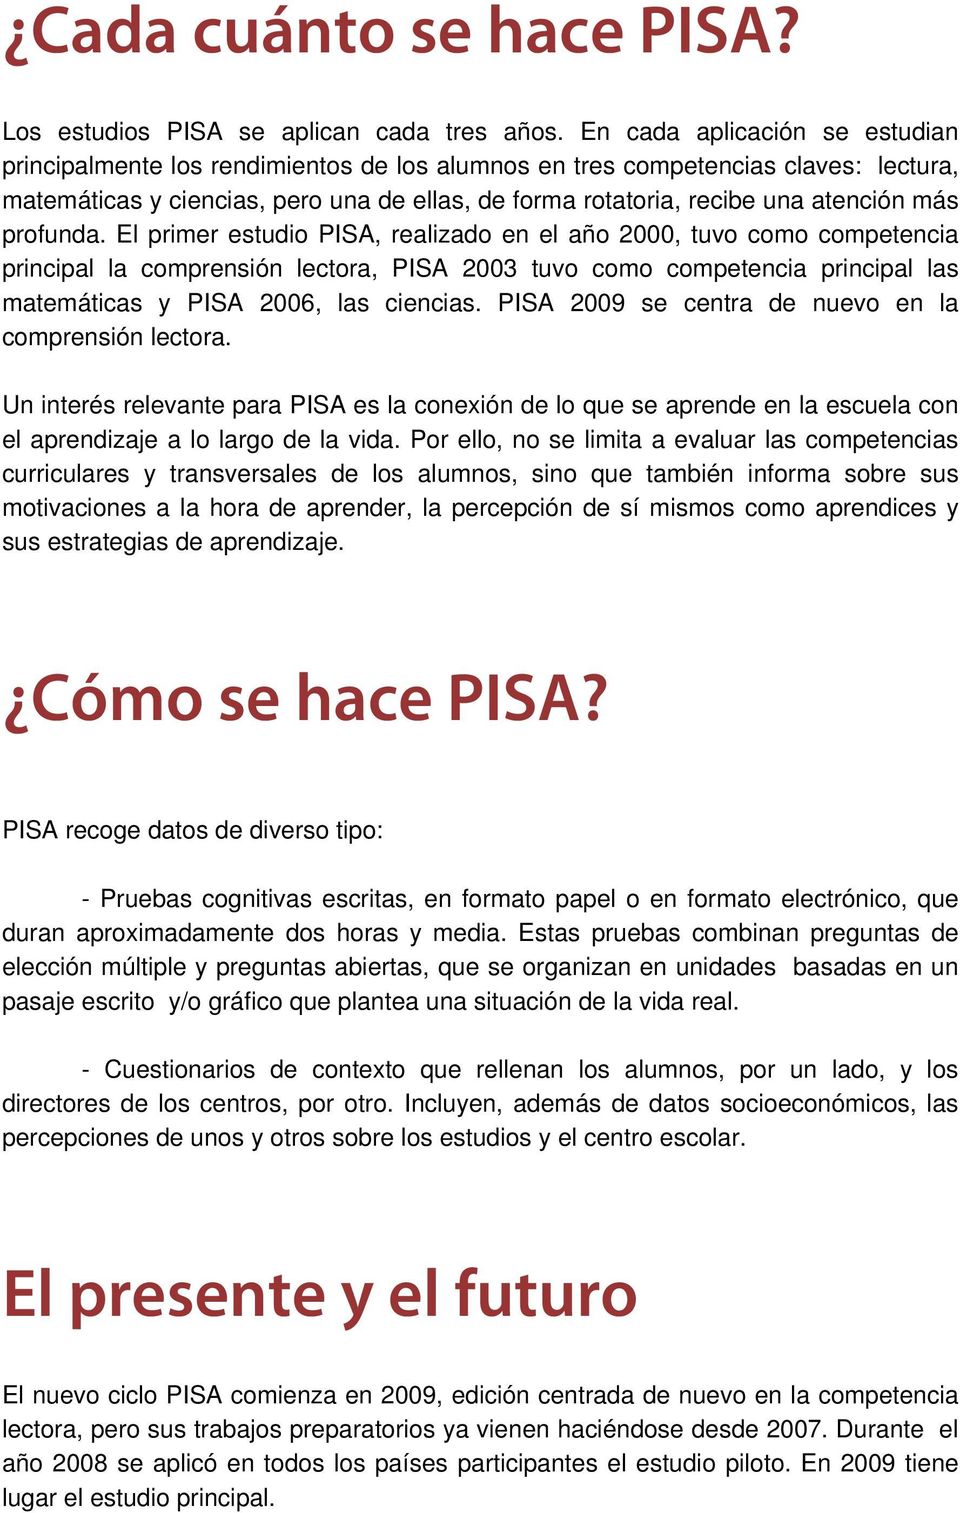 El primer etudio PISA, realizado en el año 2000, tuvo como competencia principal la comprenión lectora, PISA 2003 tuvo como competencia principal la matemática y PISA 2006, la ciencia.